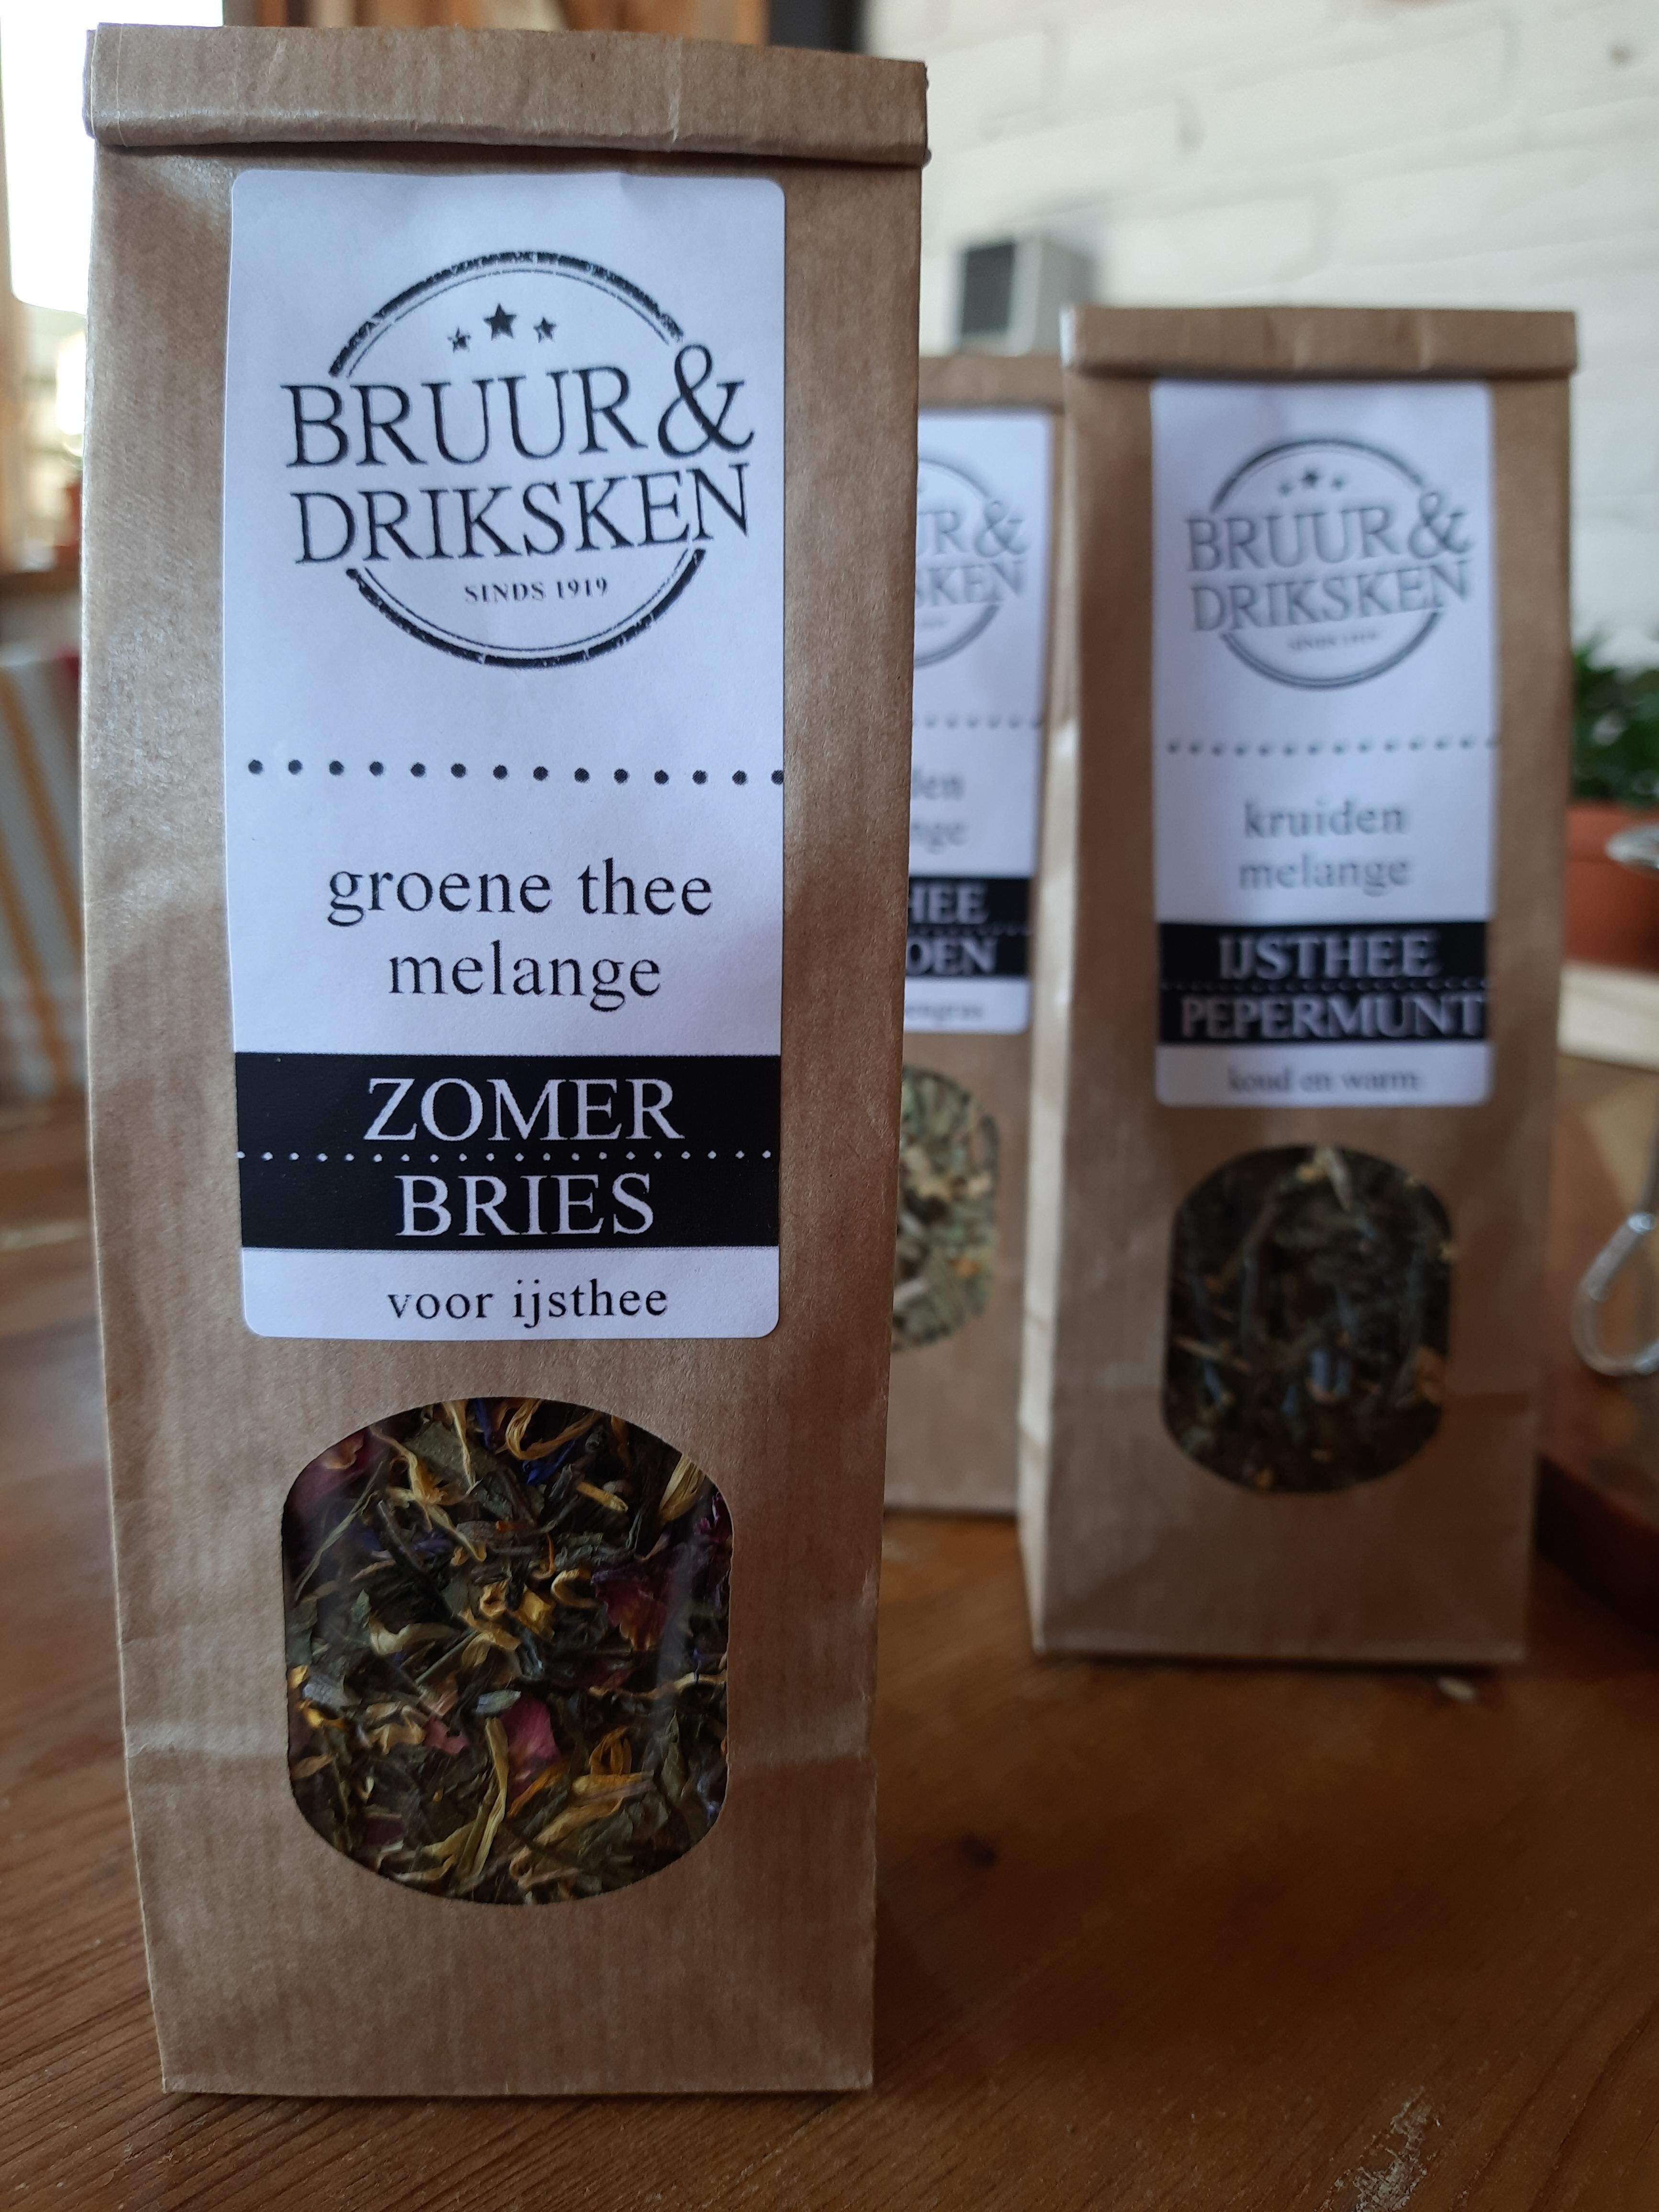 Bruur&Driksken Ijsthee Zomerbries (groene thee)